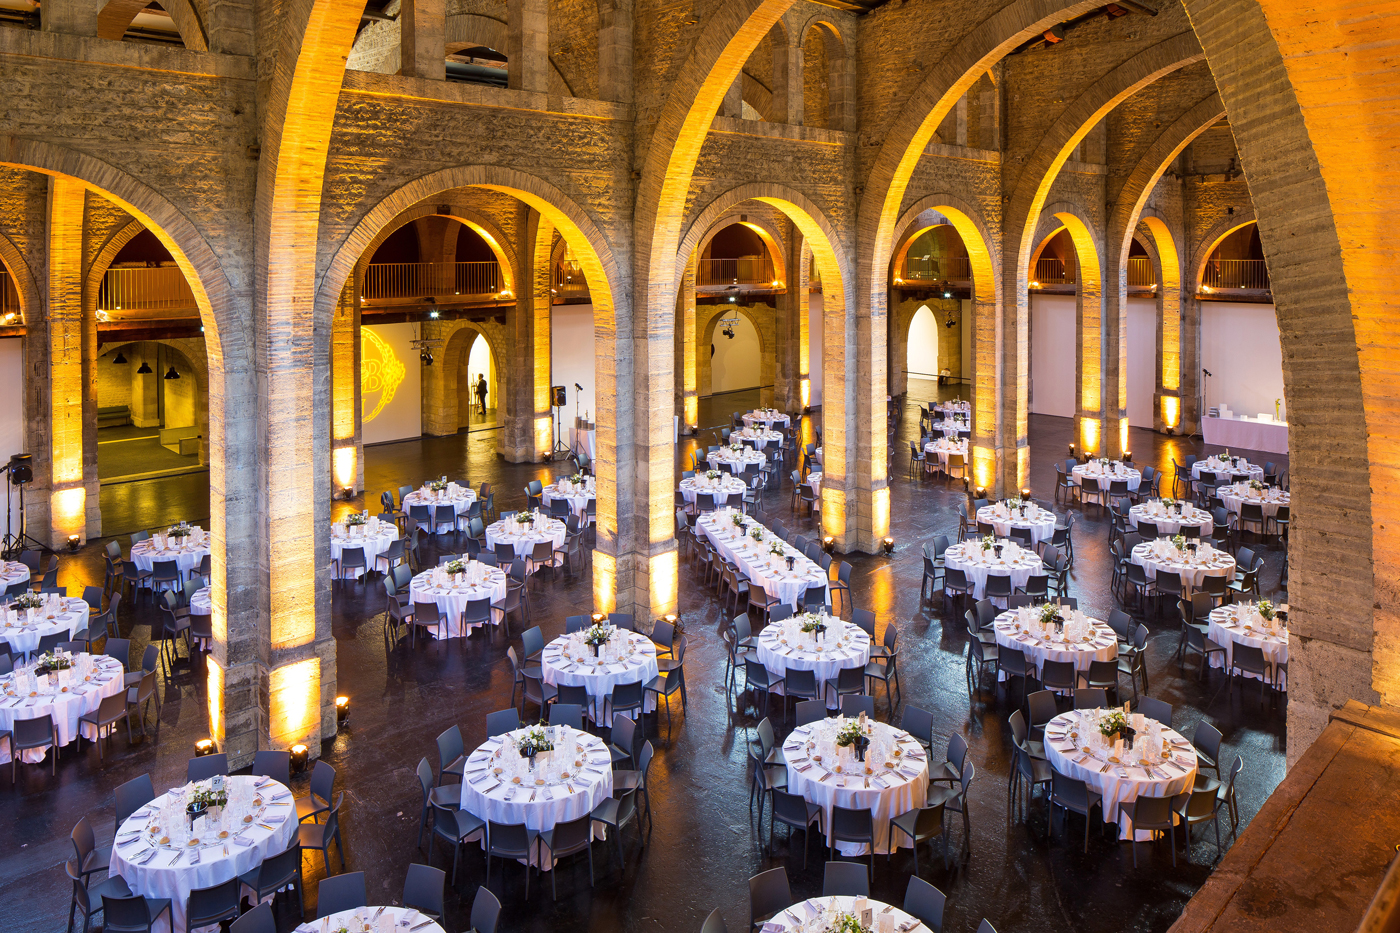 Sous de hautes voutes en pierre sublimées par un éclairage doré, un ensemble de plus d'une quarantaine de tables sont napées, dressées et fleuries.